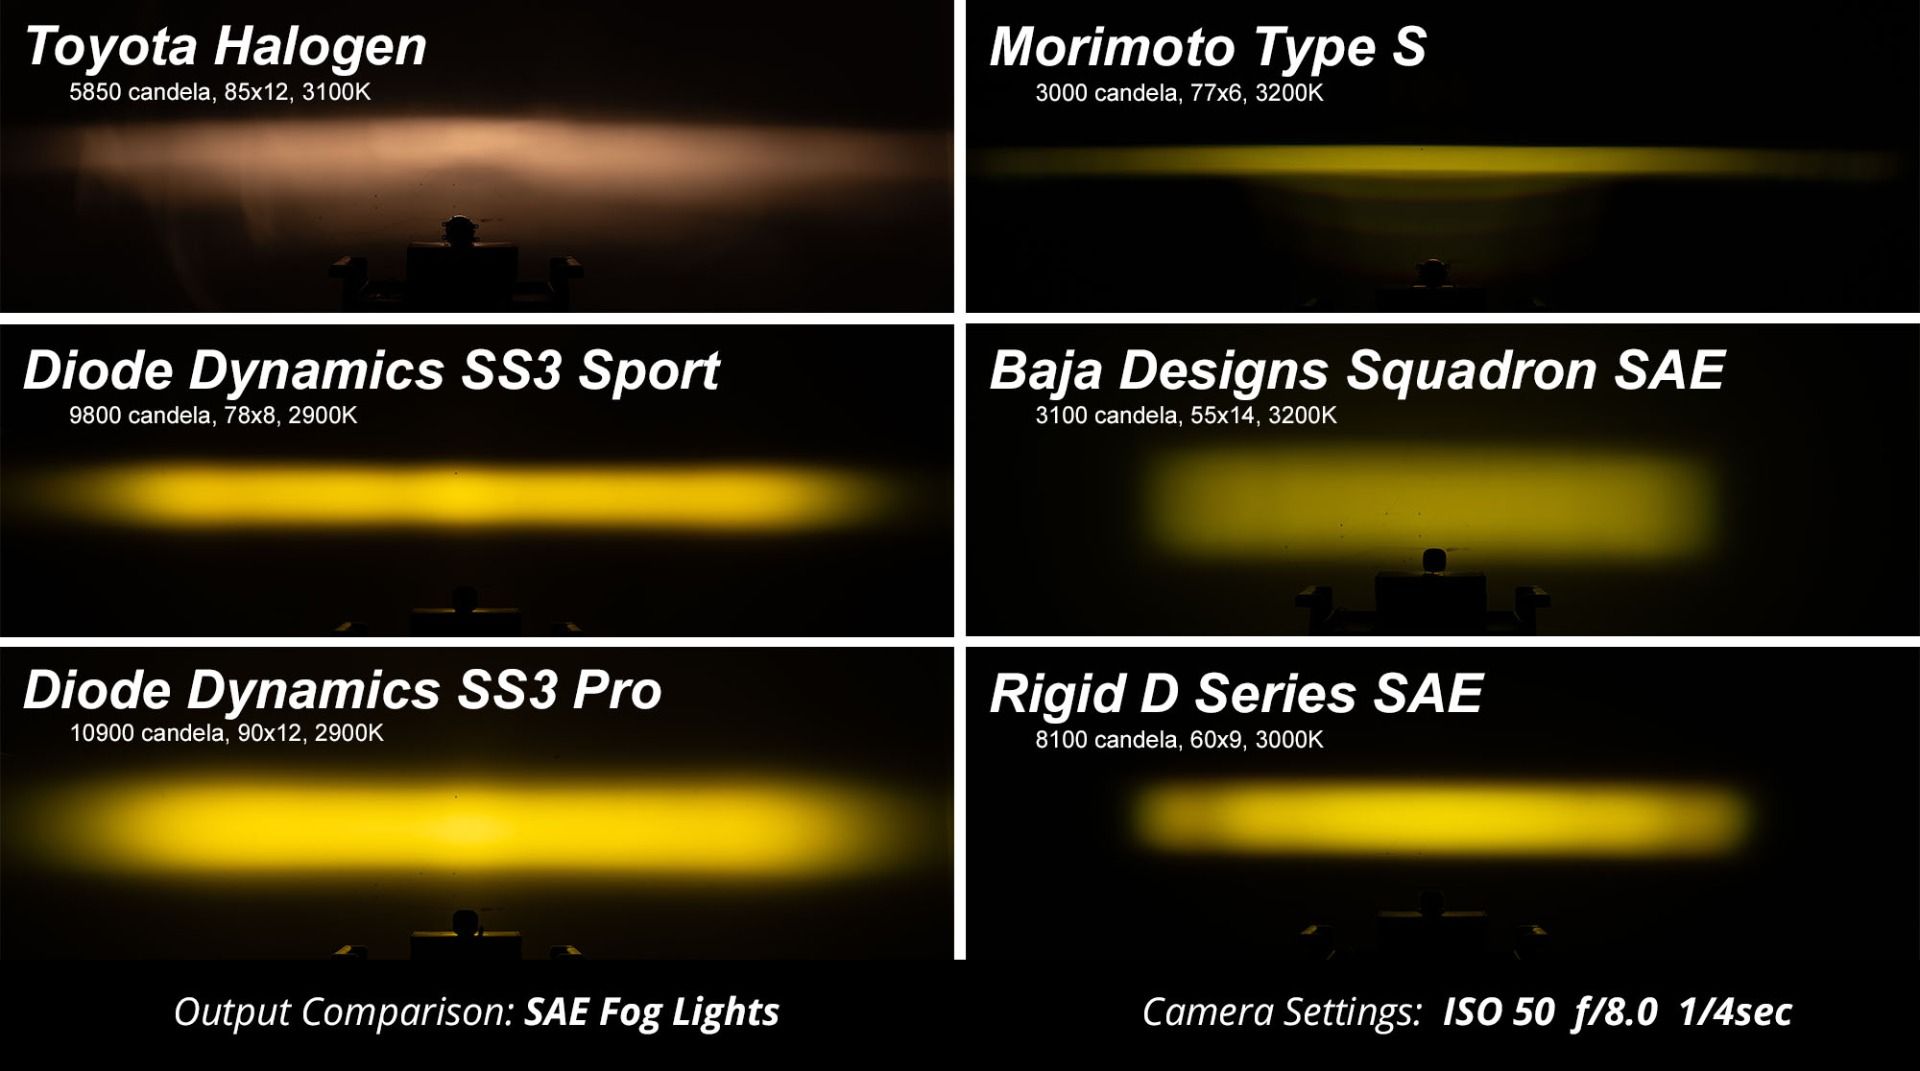 SS3 LED Fog Light Kit For 2013-2016 Honda CR-Z